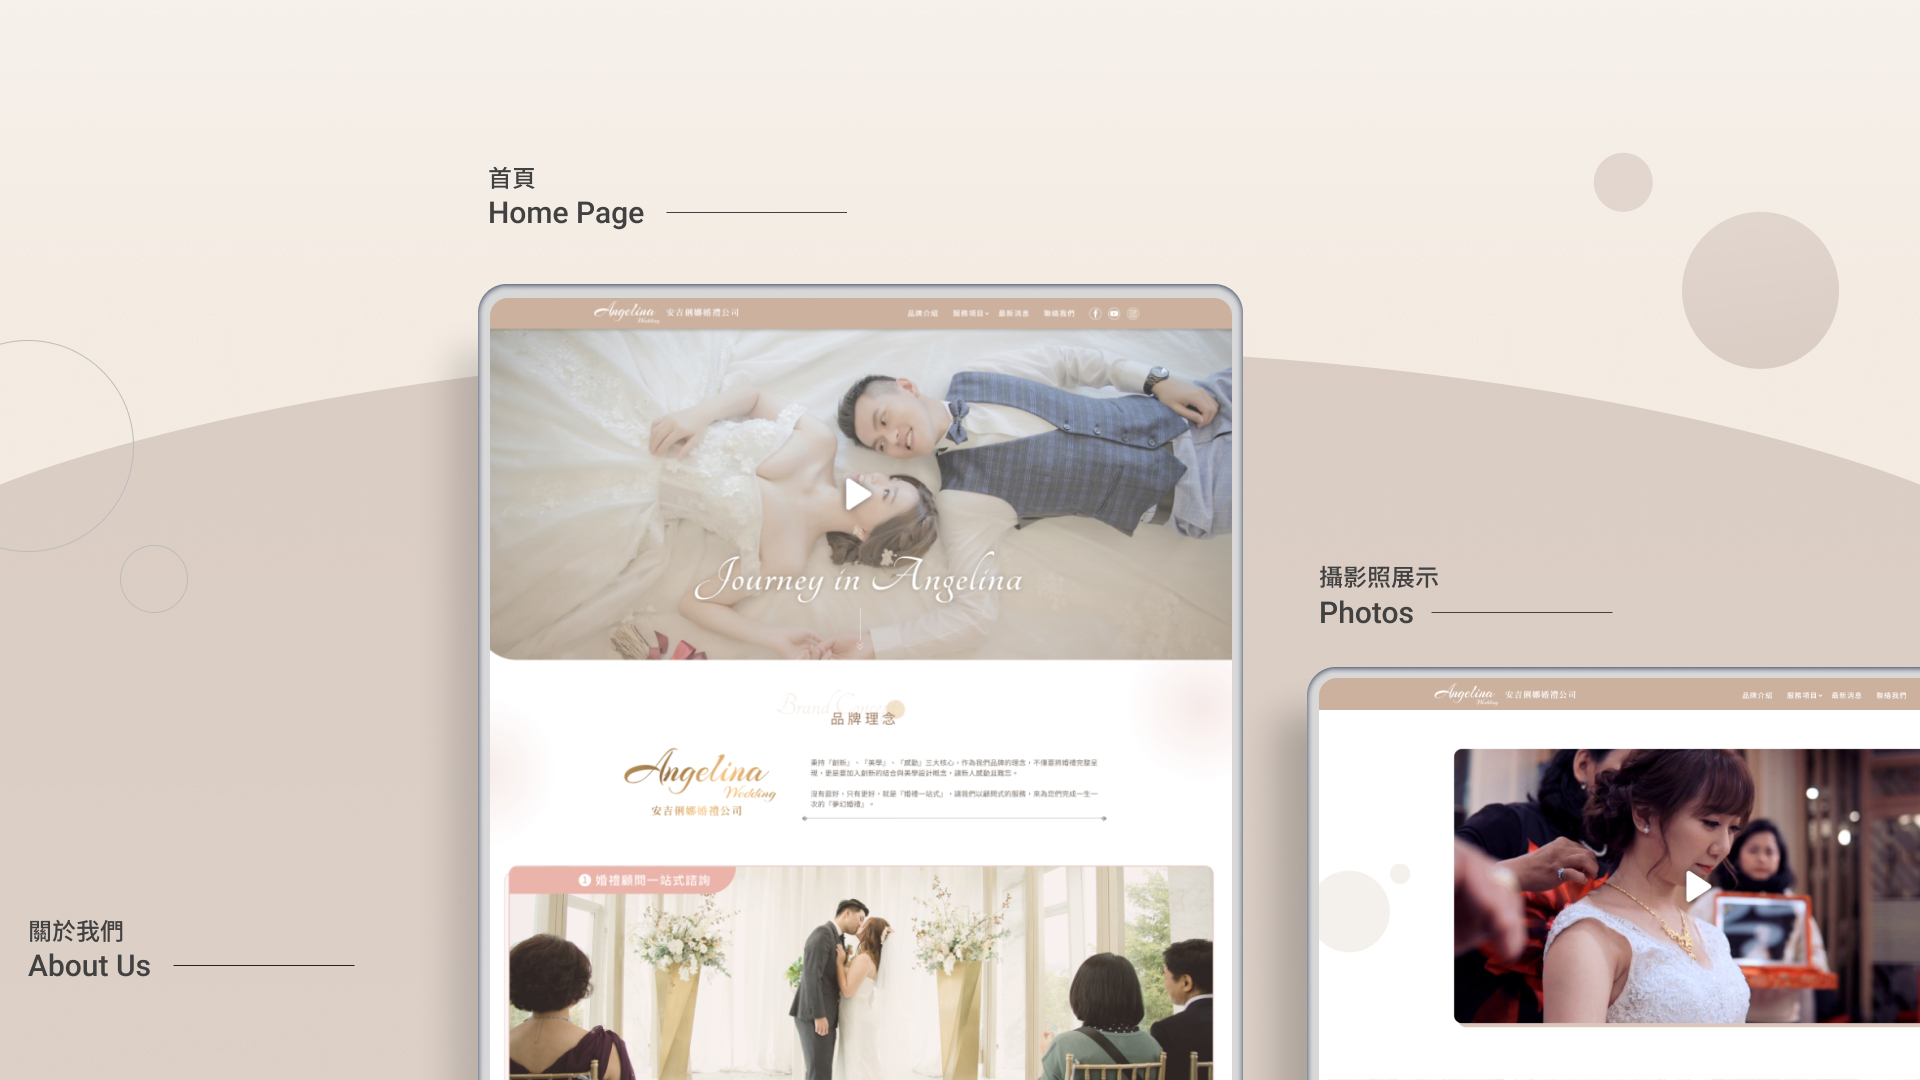 安吉俐娜婚禮公司 網頁設計案例